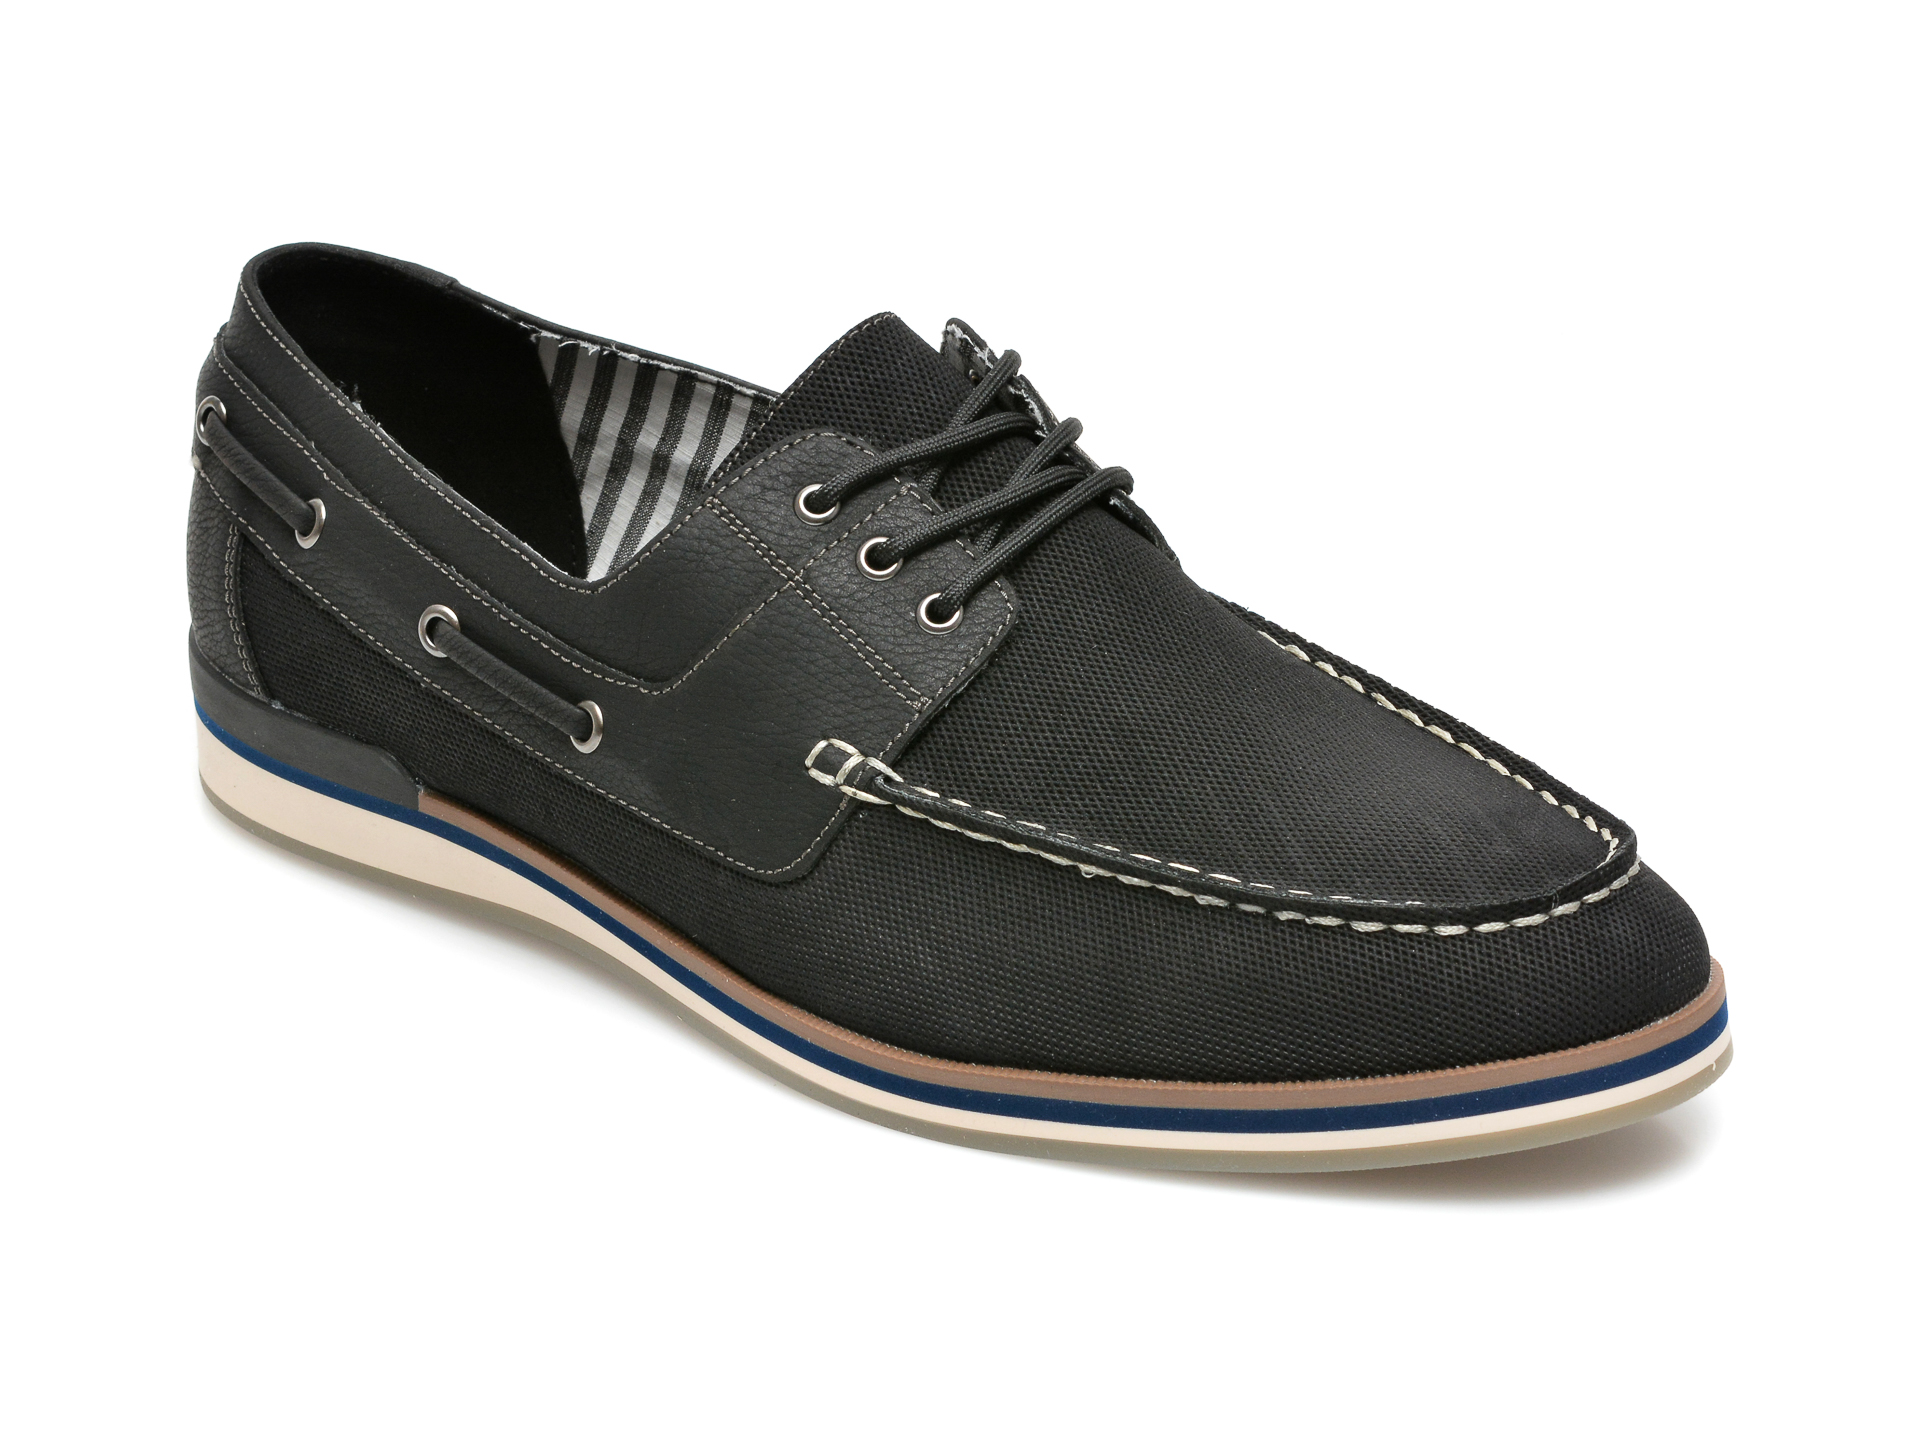 Pantofi ALDO negri, Bohor001, din piele ecologica ALDO imagine 2022